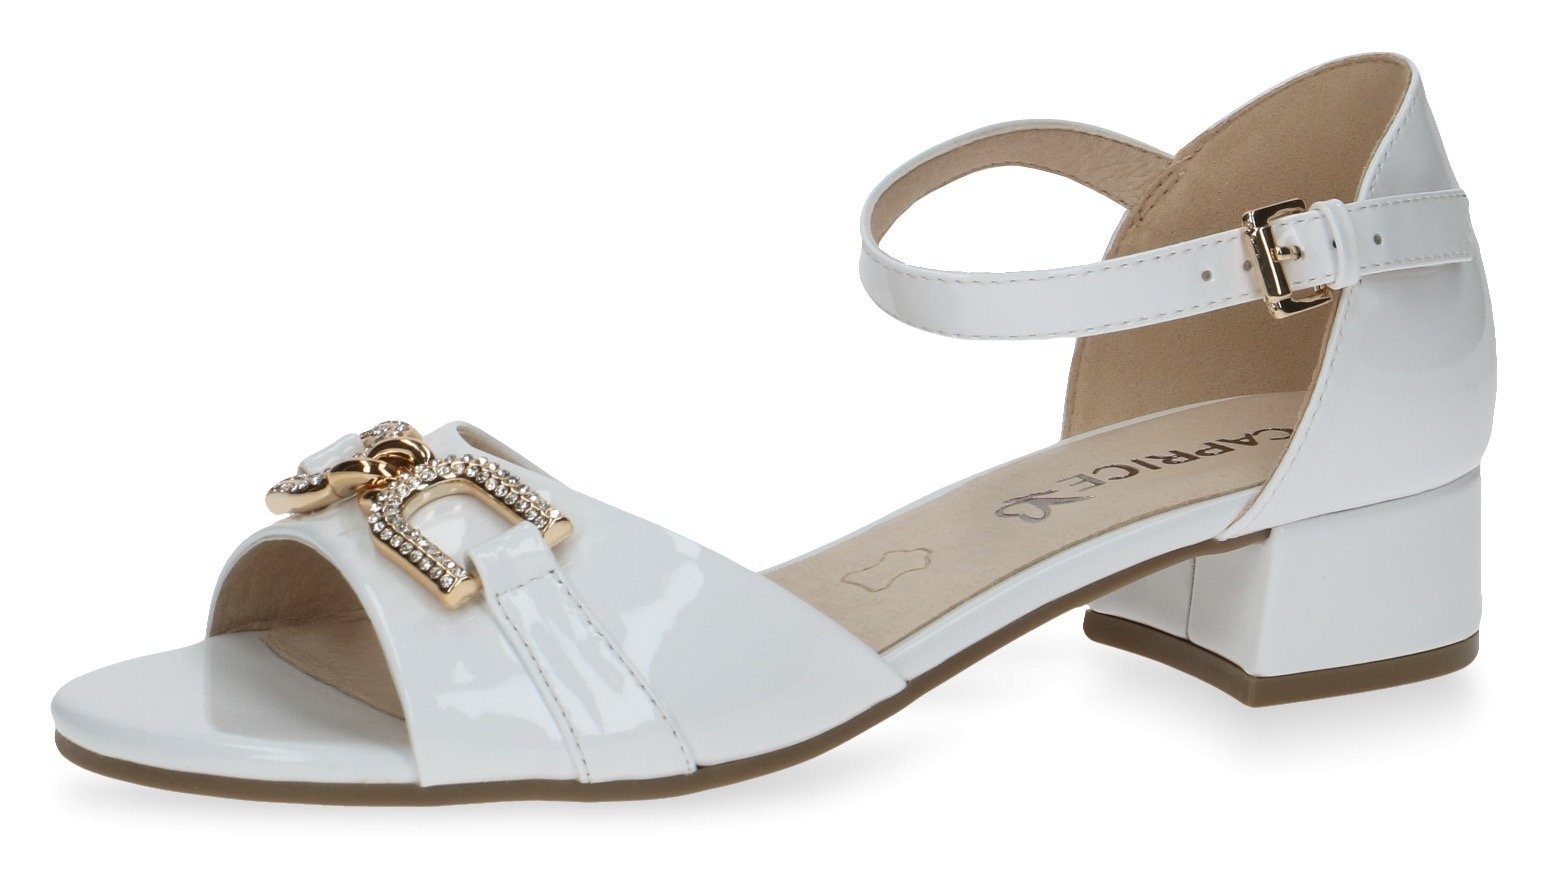 Caprice Sandalette mit schönem Schmuckelement weiß-glänzend